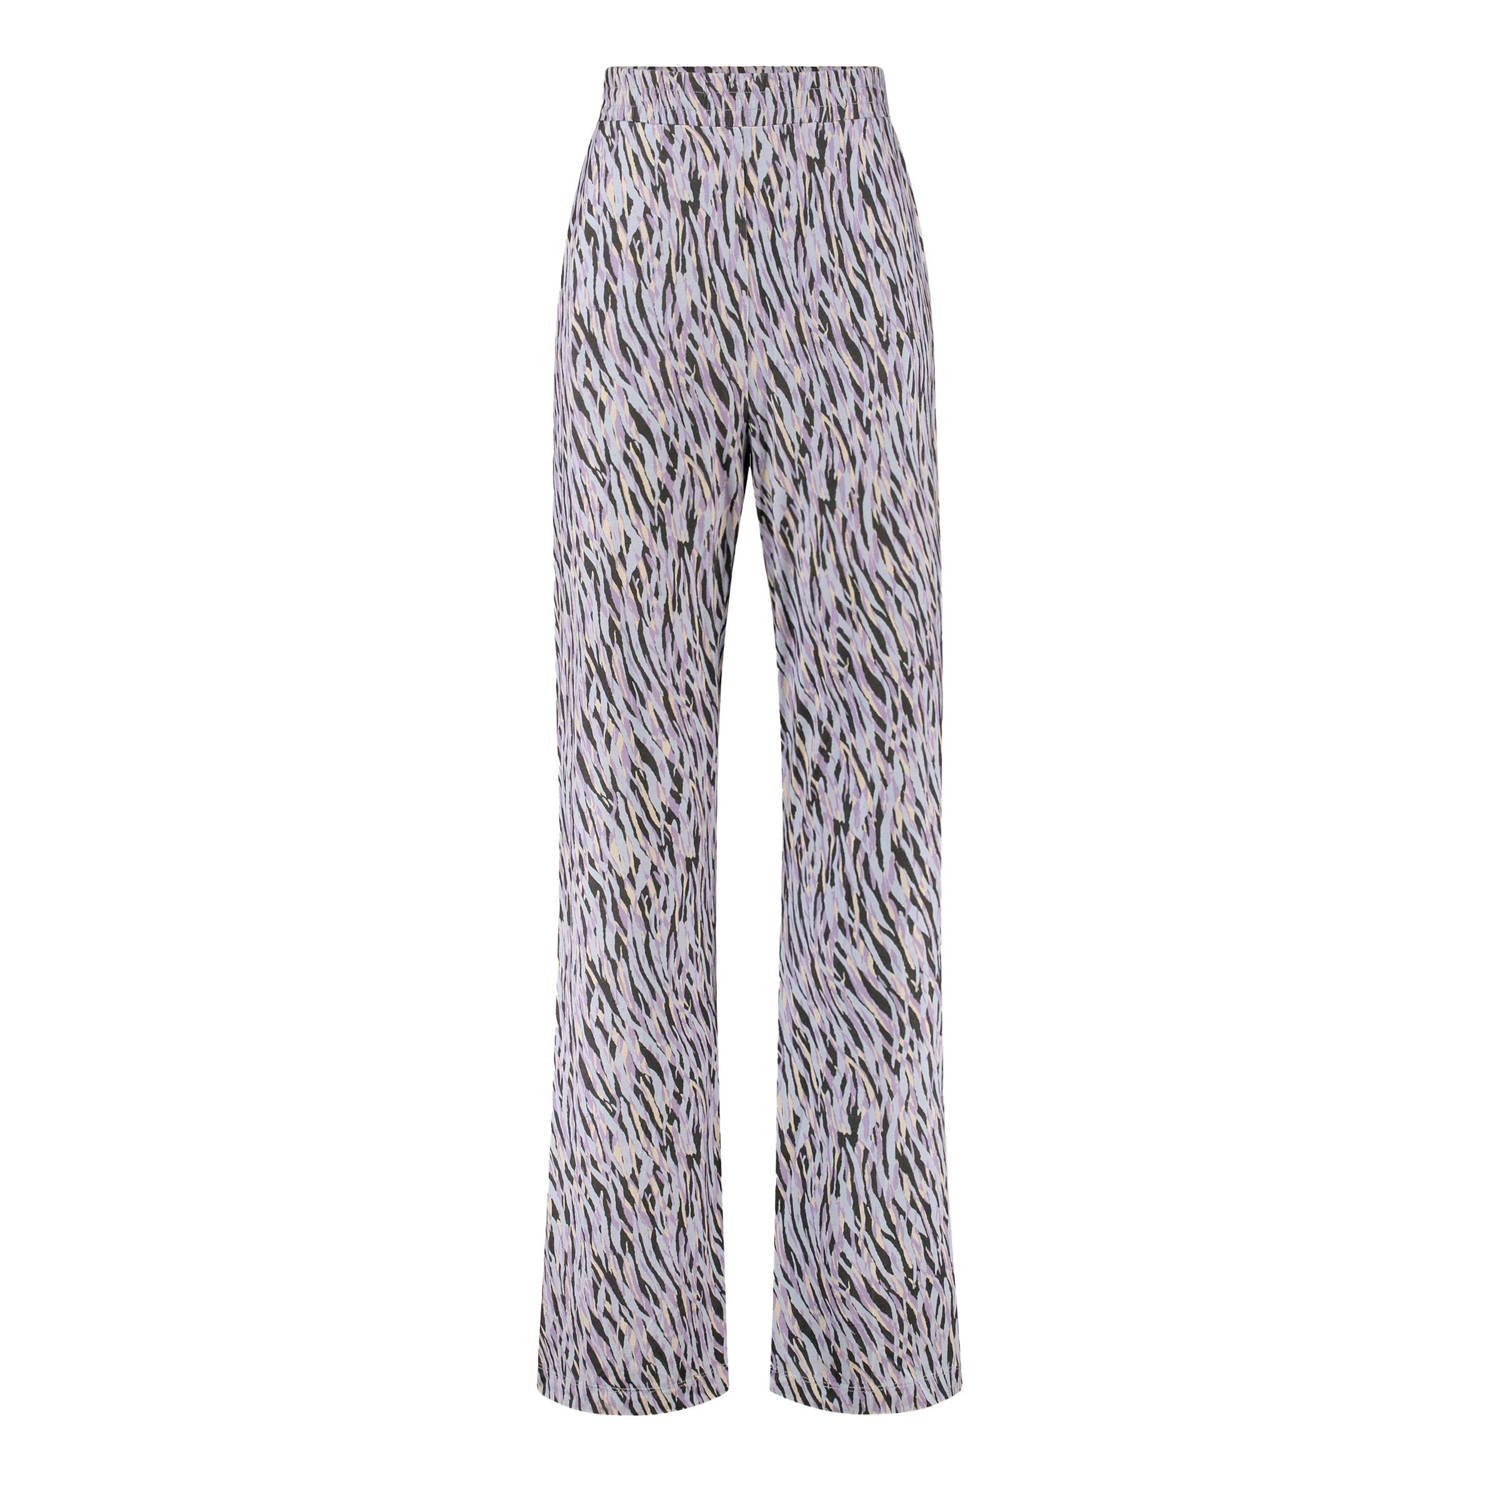 Expresso regular fit broek met zebraprint paars lichtblauw beige